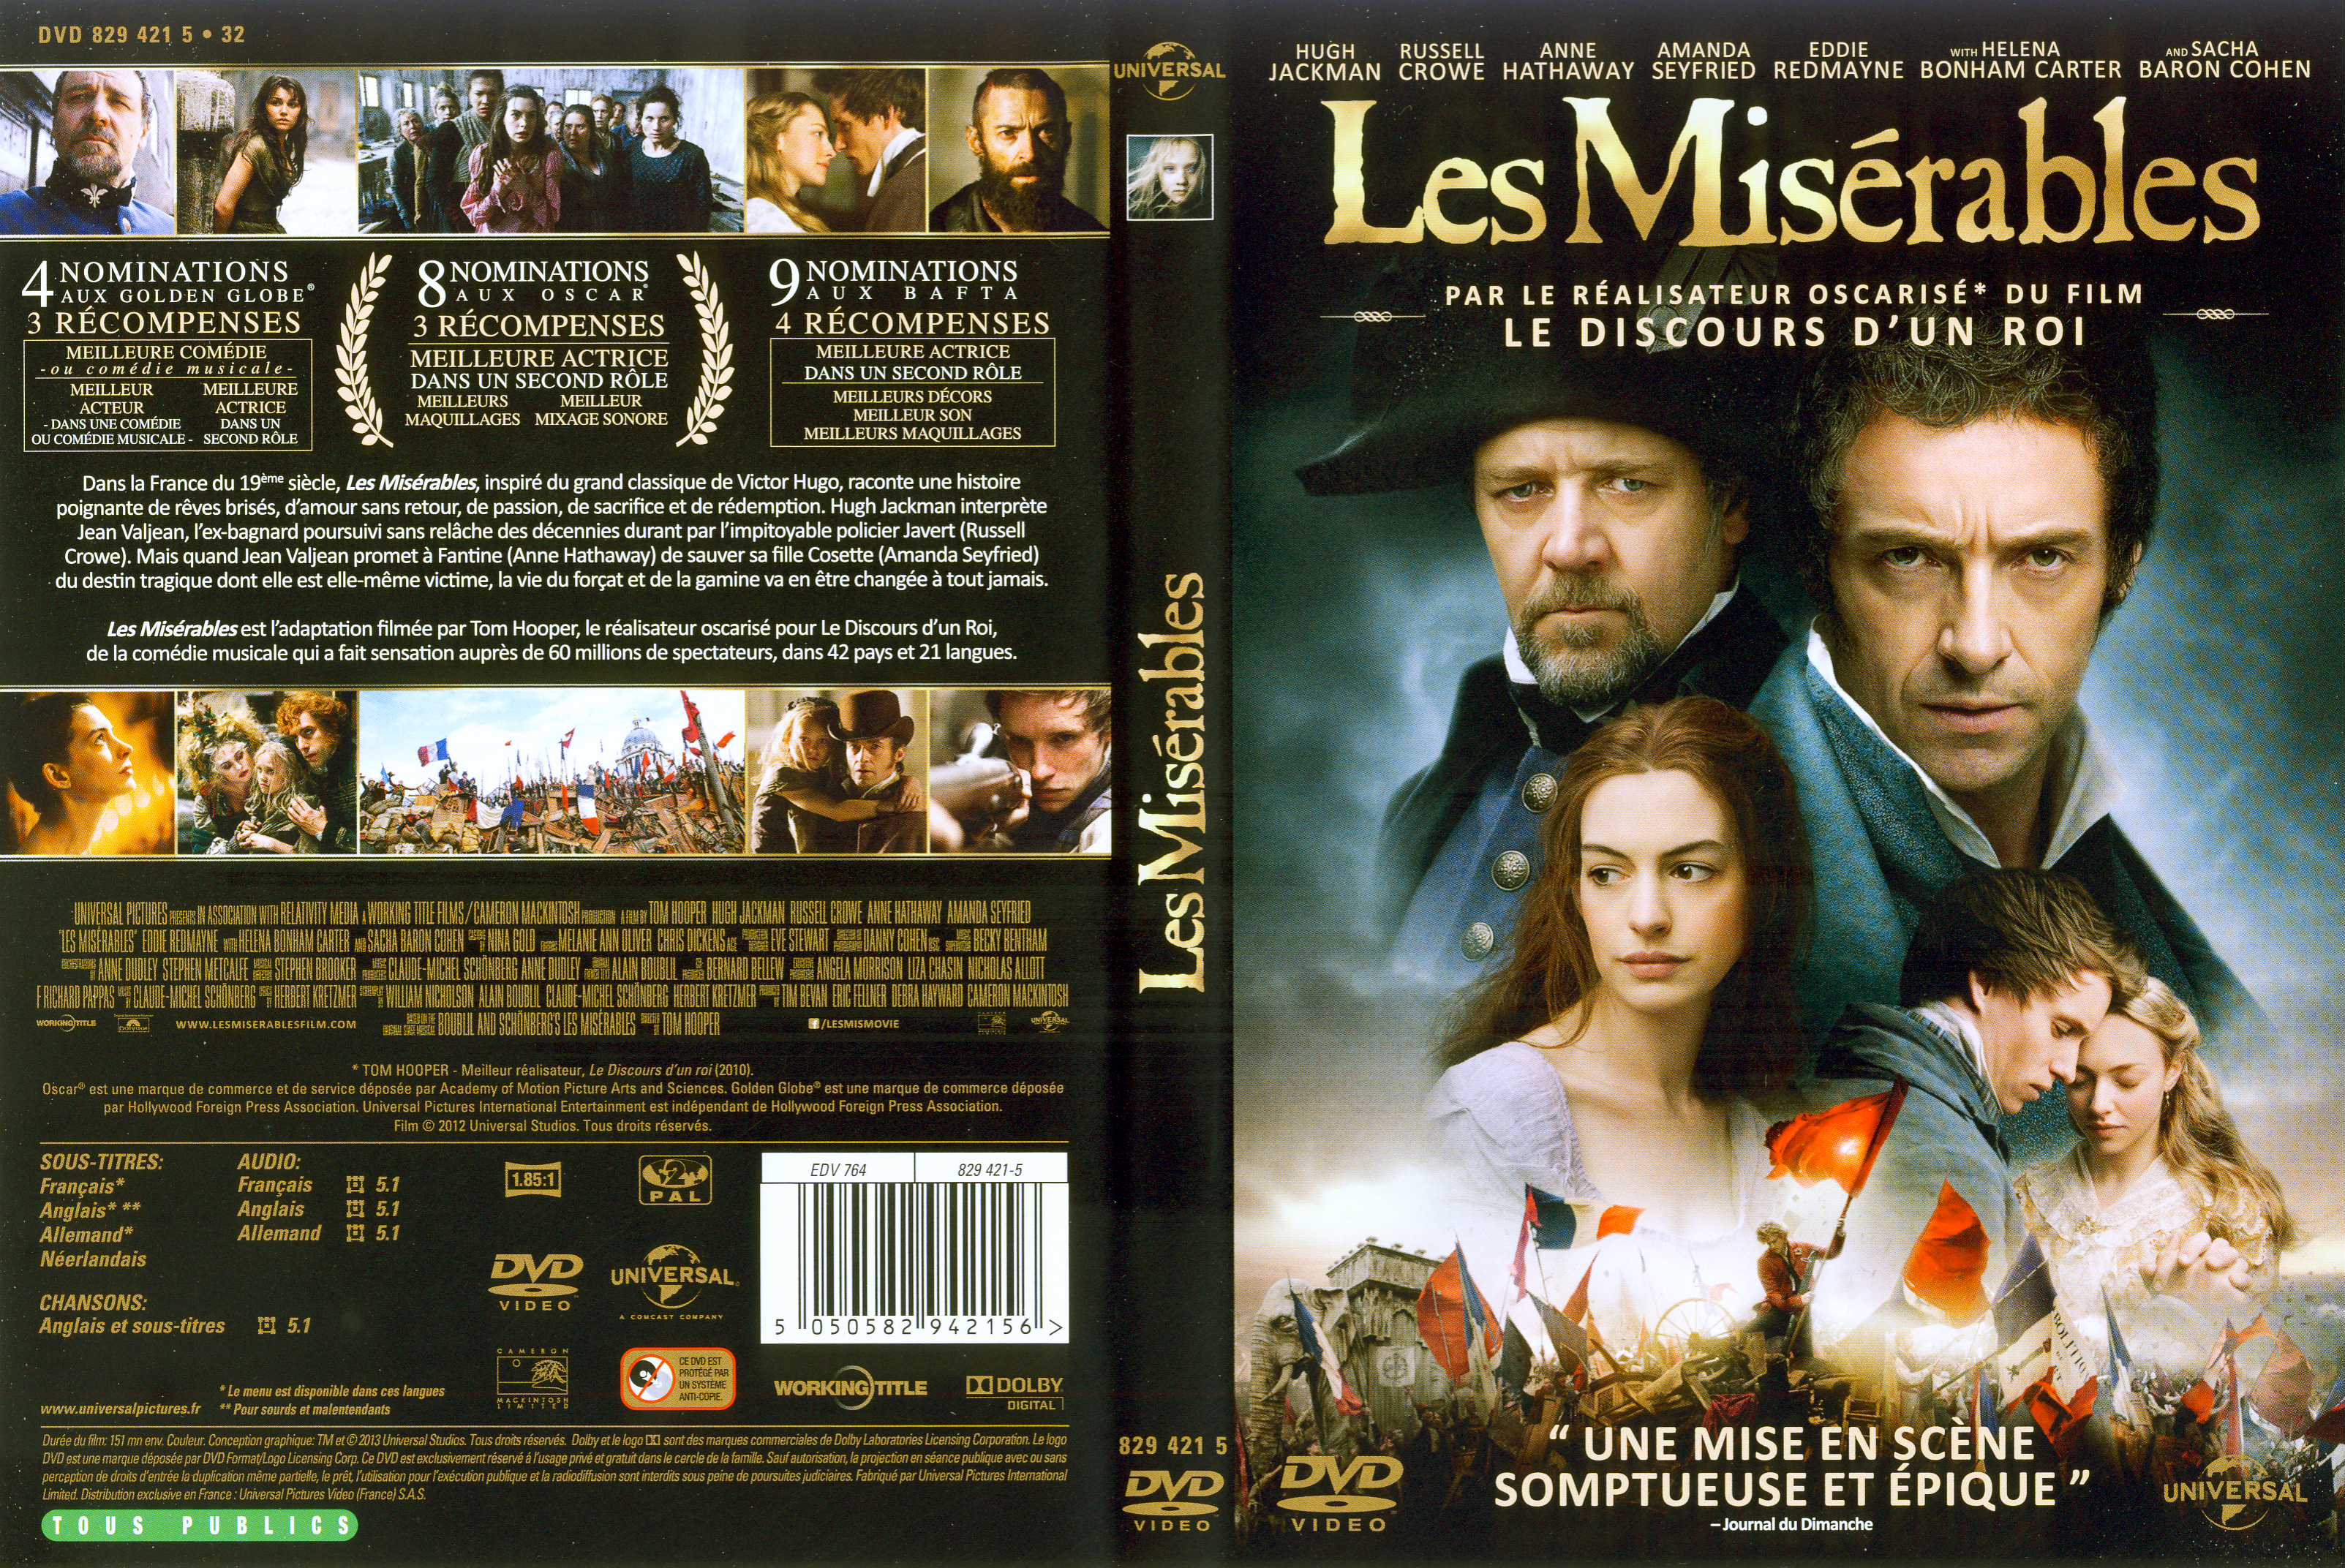 Jaquette DVD Les misrables (2013)